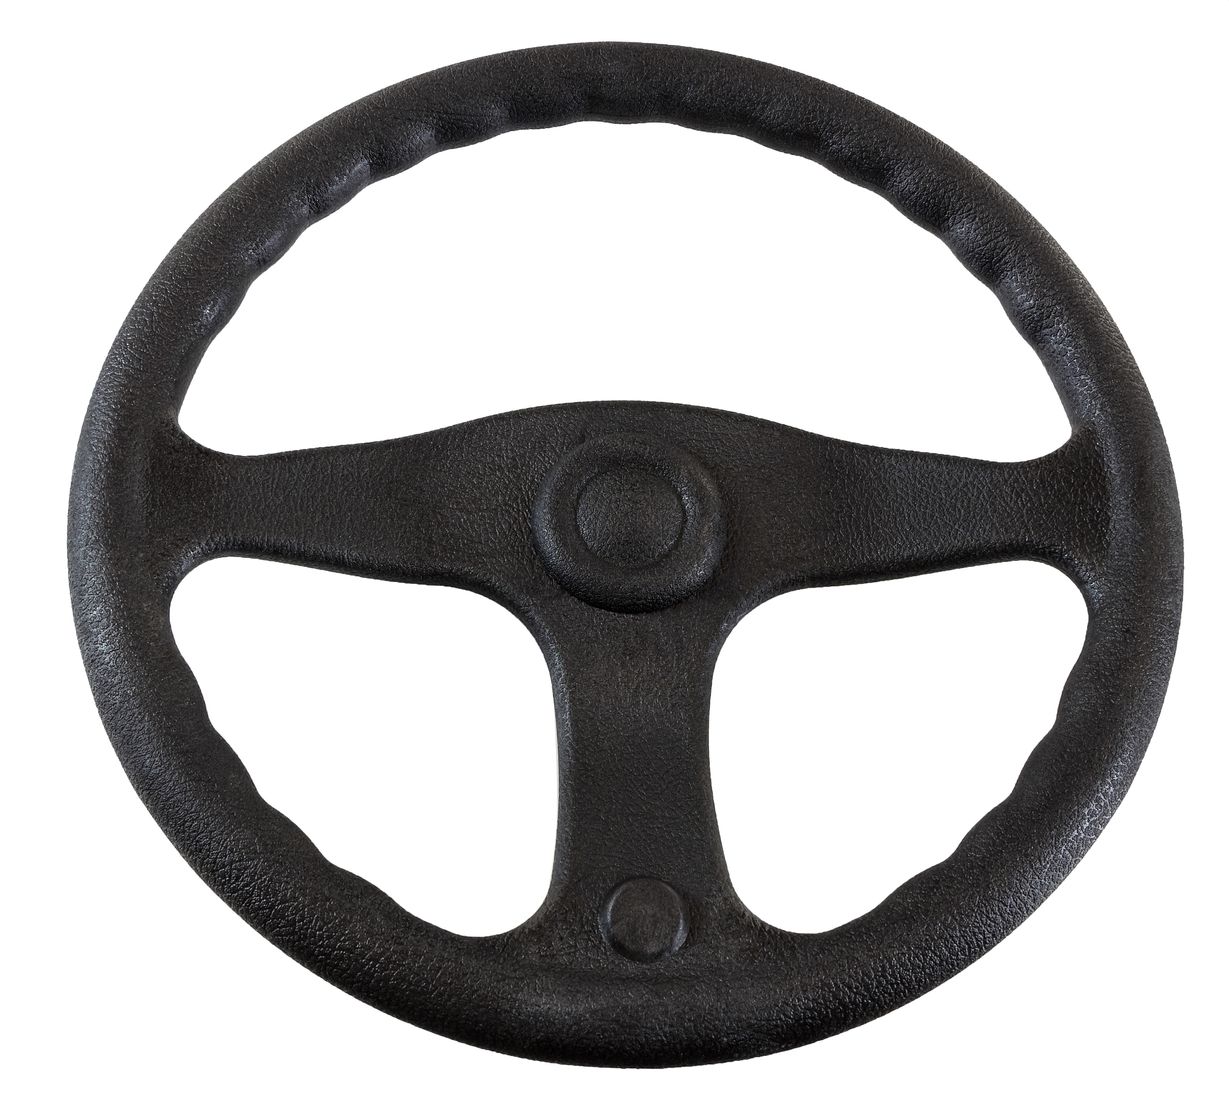 Рулевое колесо E.Chance, обод и спицы черные д. 330 мм (упаковка из 12 шт.) D33_EC_pkg_12